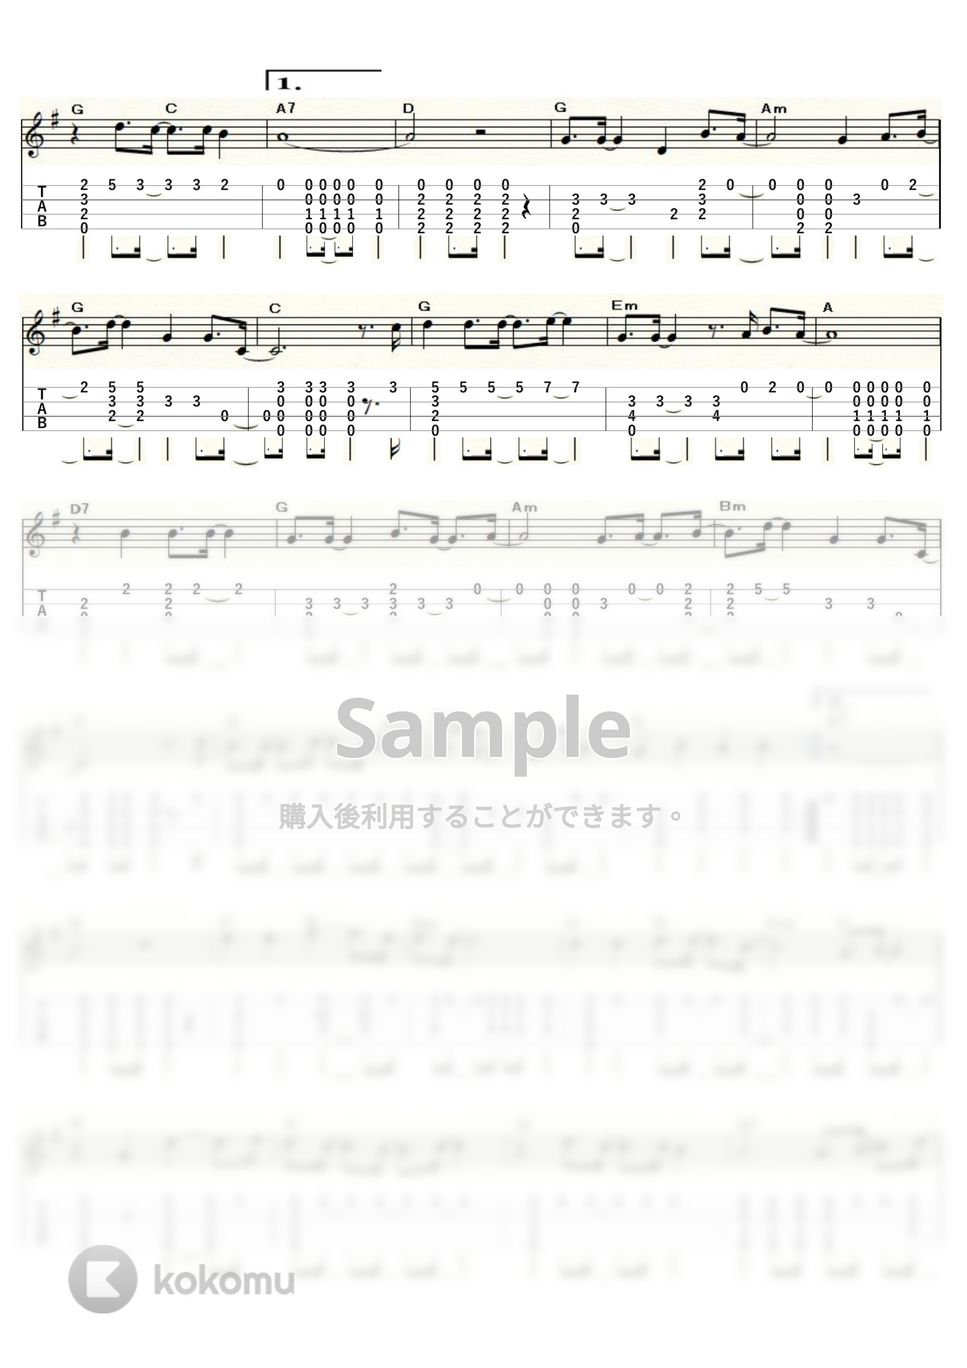 モンキーズ - DAYDREAM BELIEVER (ｳｸﾚﾚｿﾛ / High-G・Low-G / 中級) by ukulelepapa